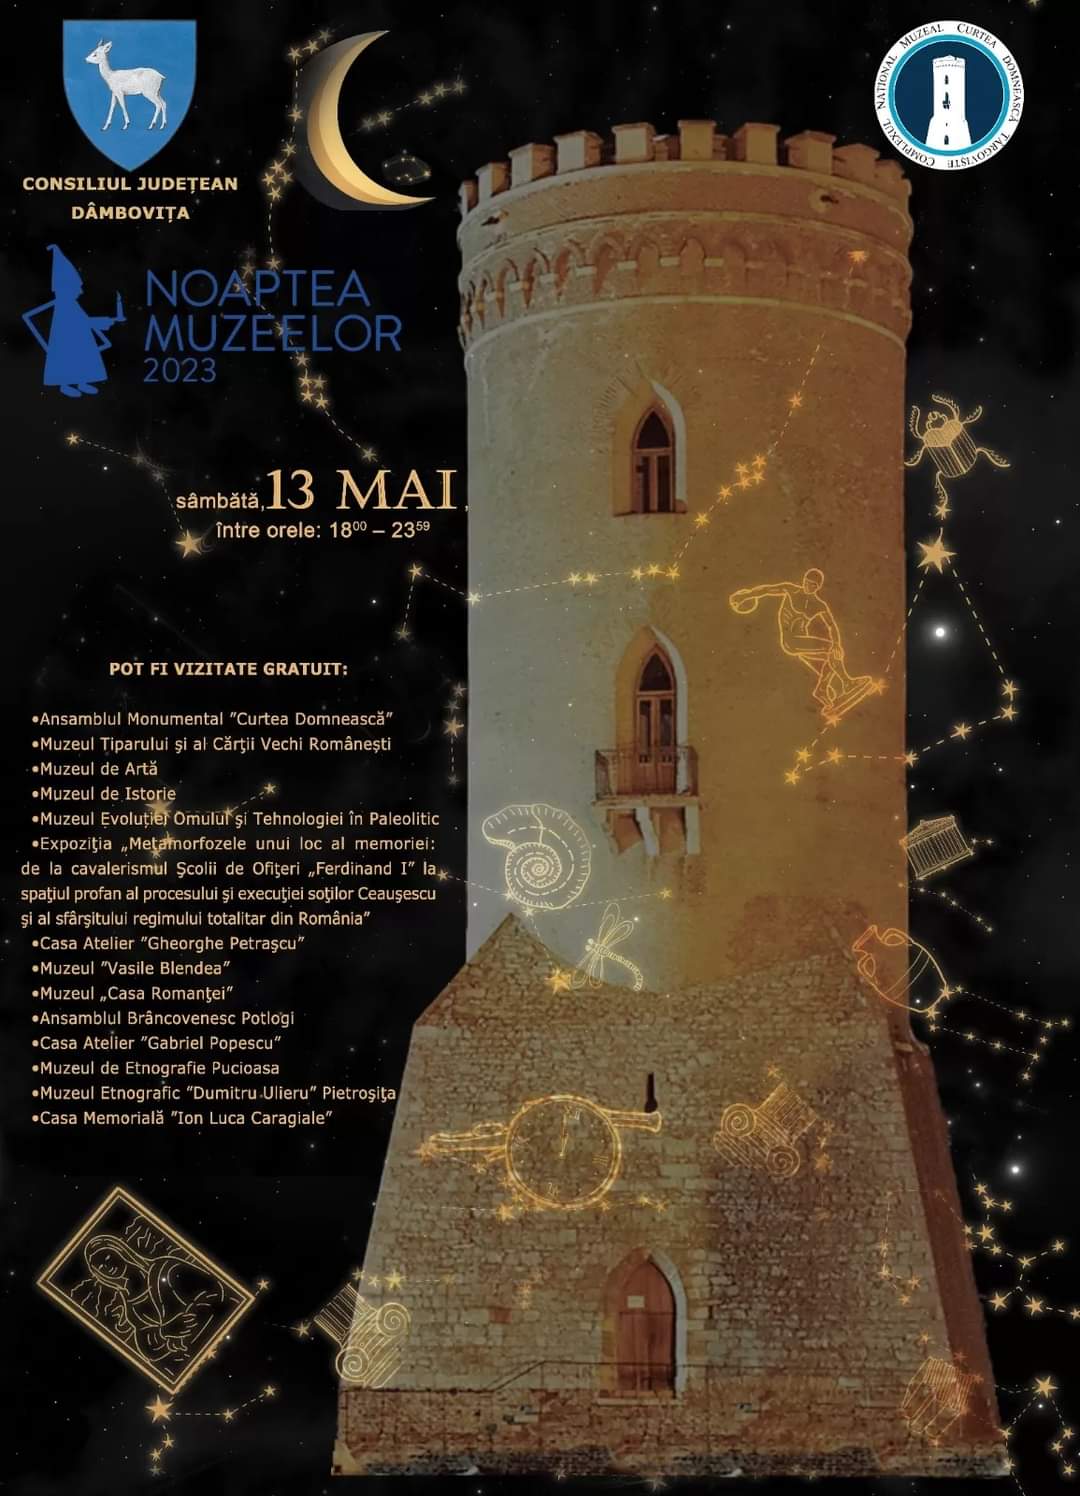 Muzeele din Dâmbovița, deschise cu ocazia acestui evenimentului Noaptea Muzeelor, Consiliul Județean Dâmbovița, prin Complexul Național Muzeal